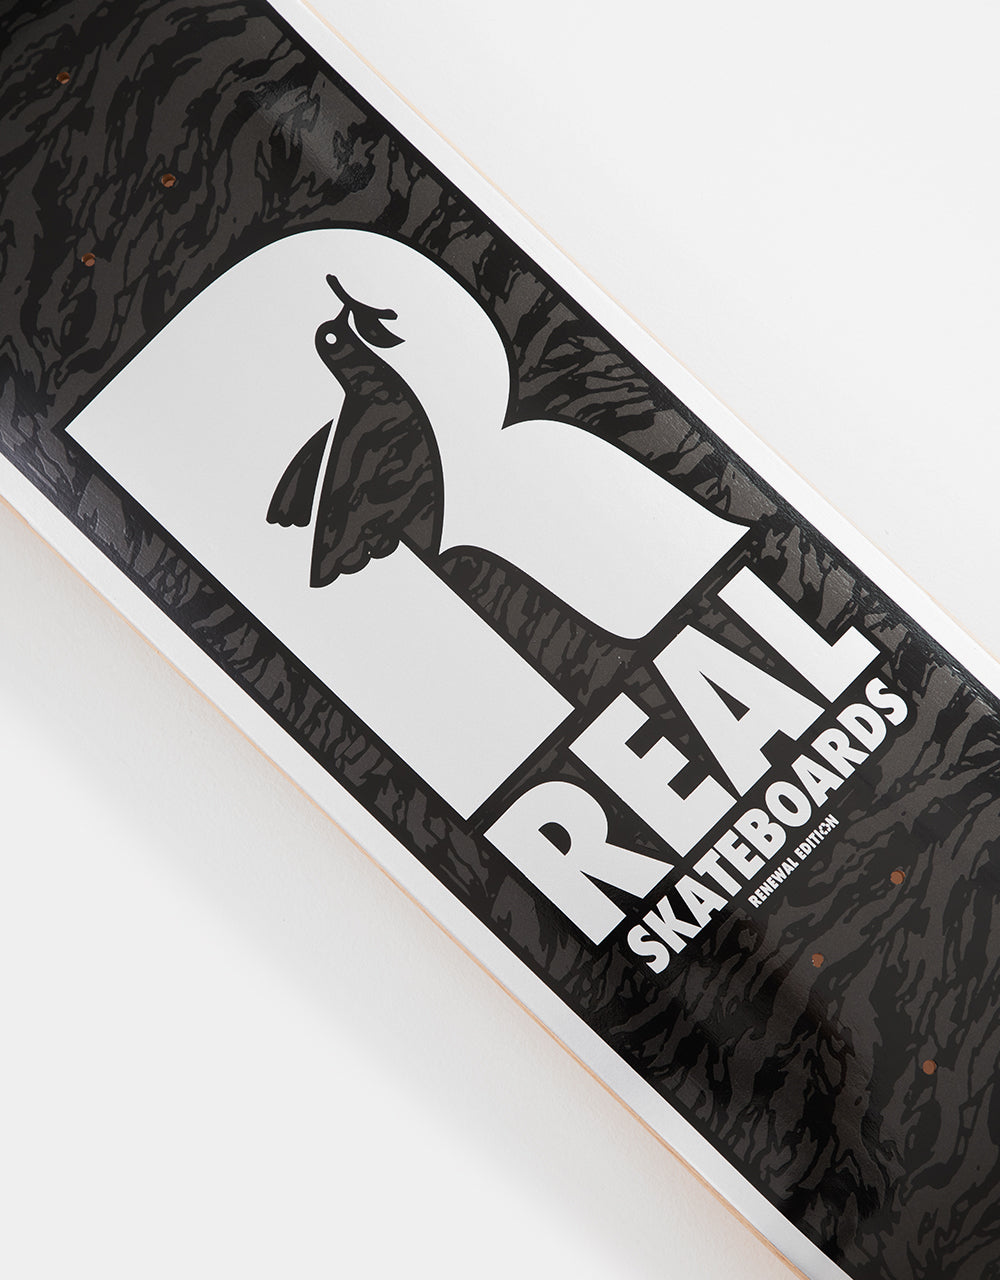 Real Renewal Doves Skateboard Deck - 8.25"